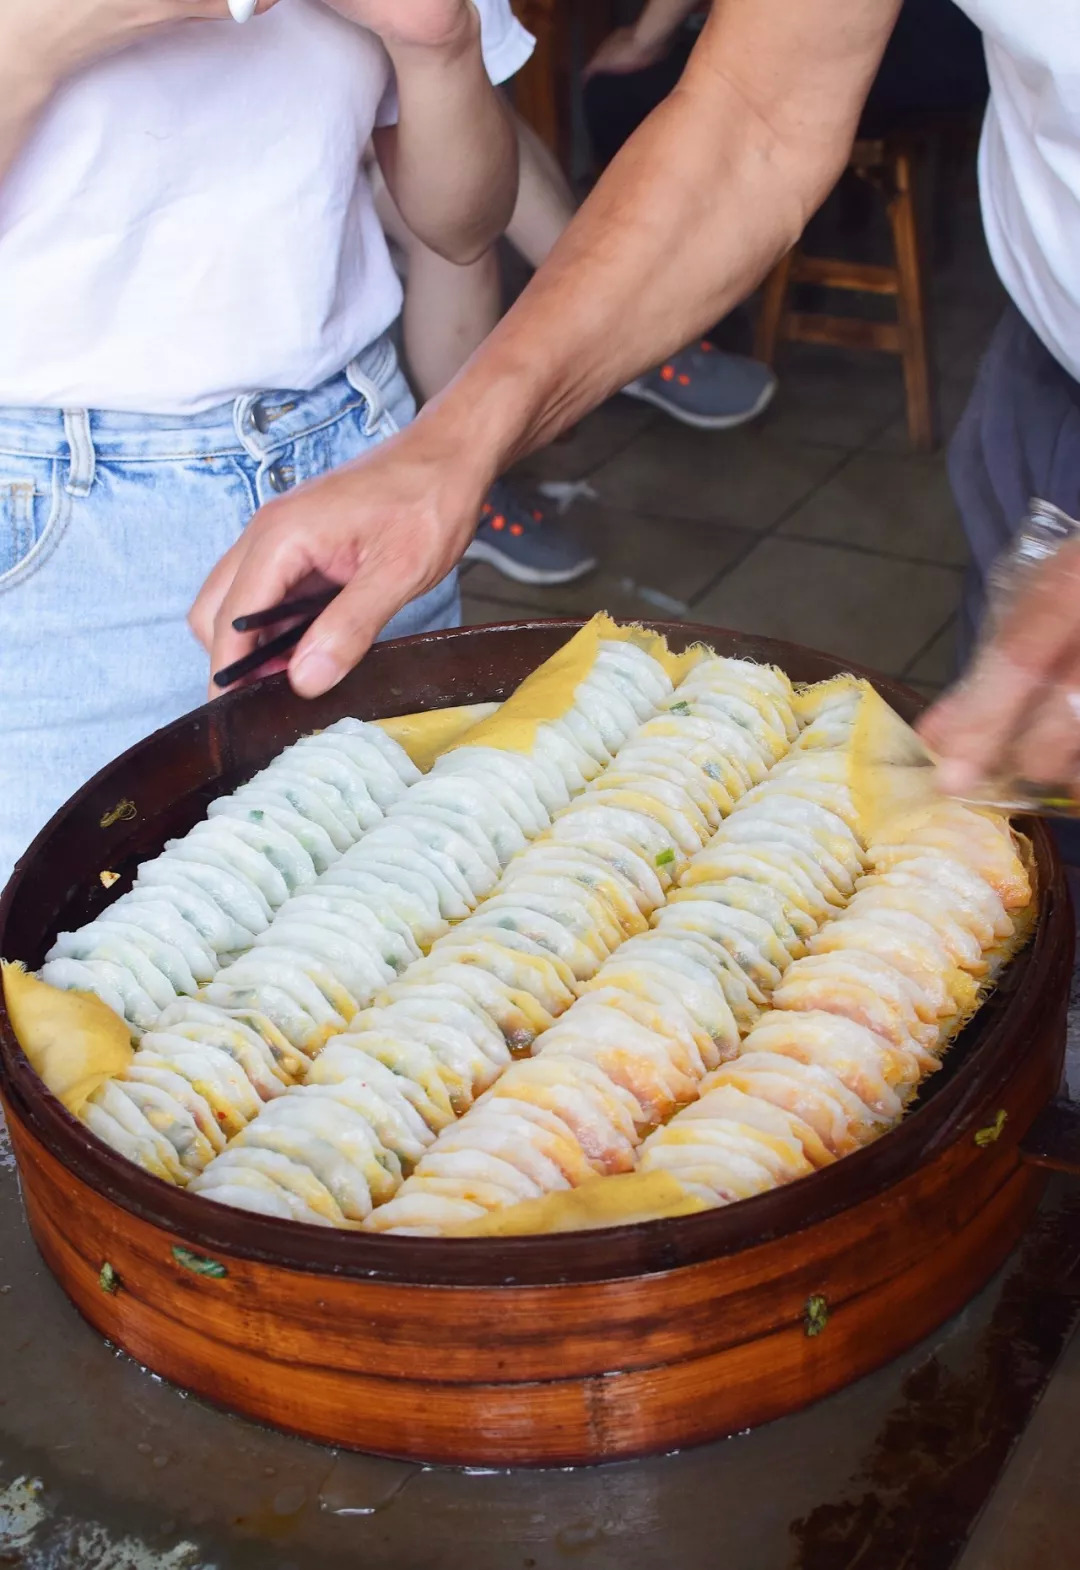 二两糯米饺子粑简直是景德镇的心头好!